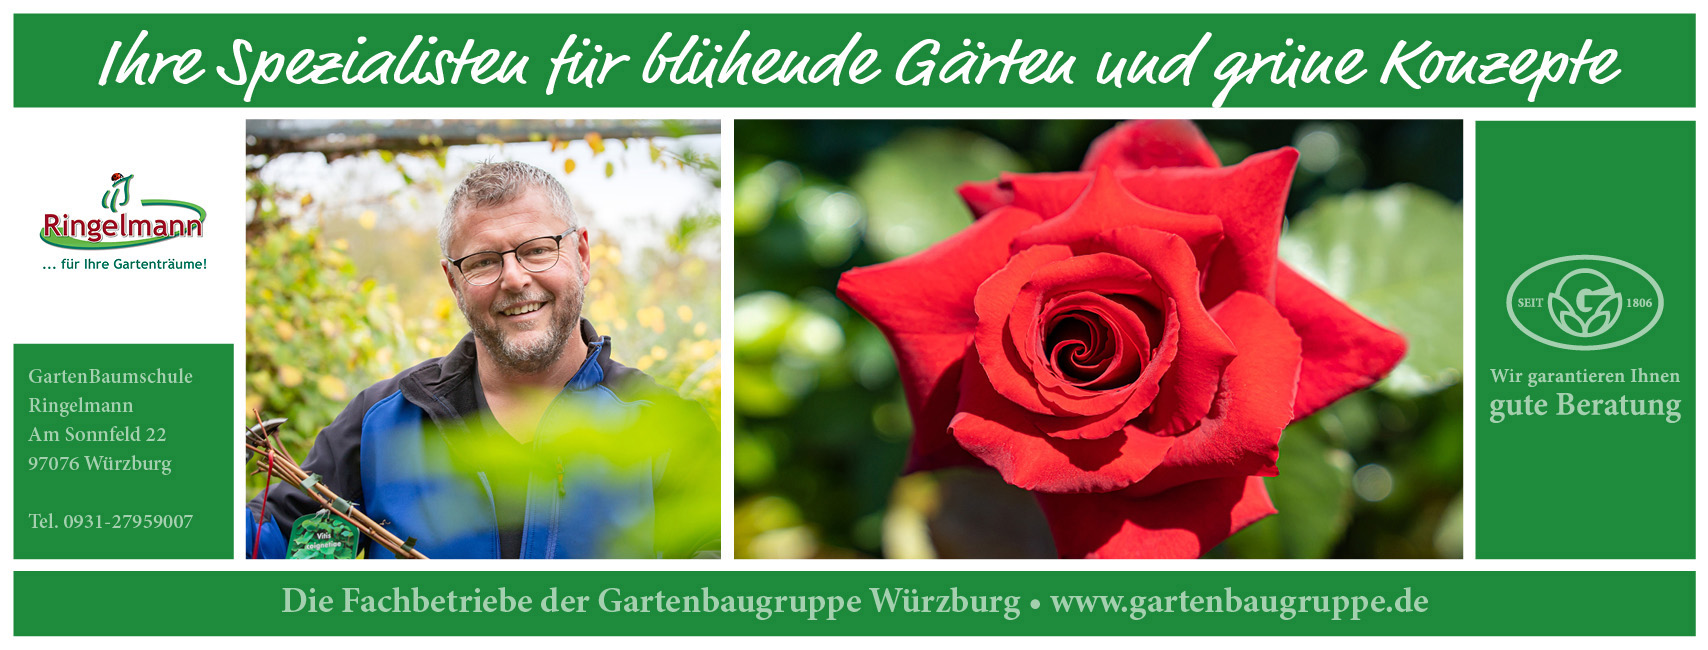 Die Gartenbaugruppe stellt sich vor: GartenBaumschule Ringelmann